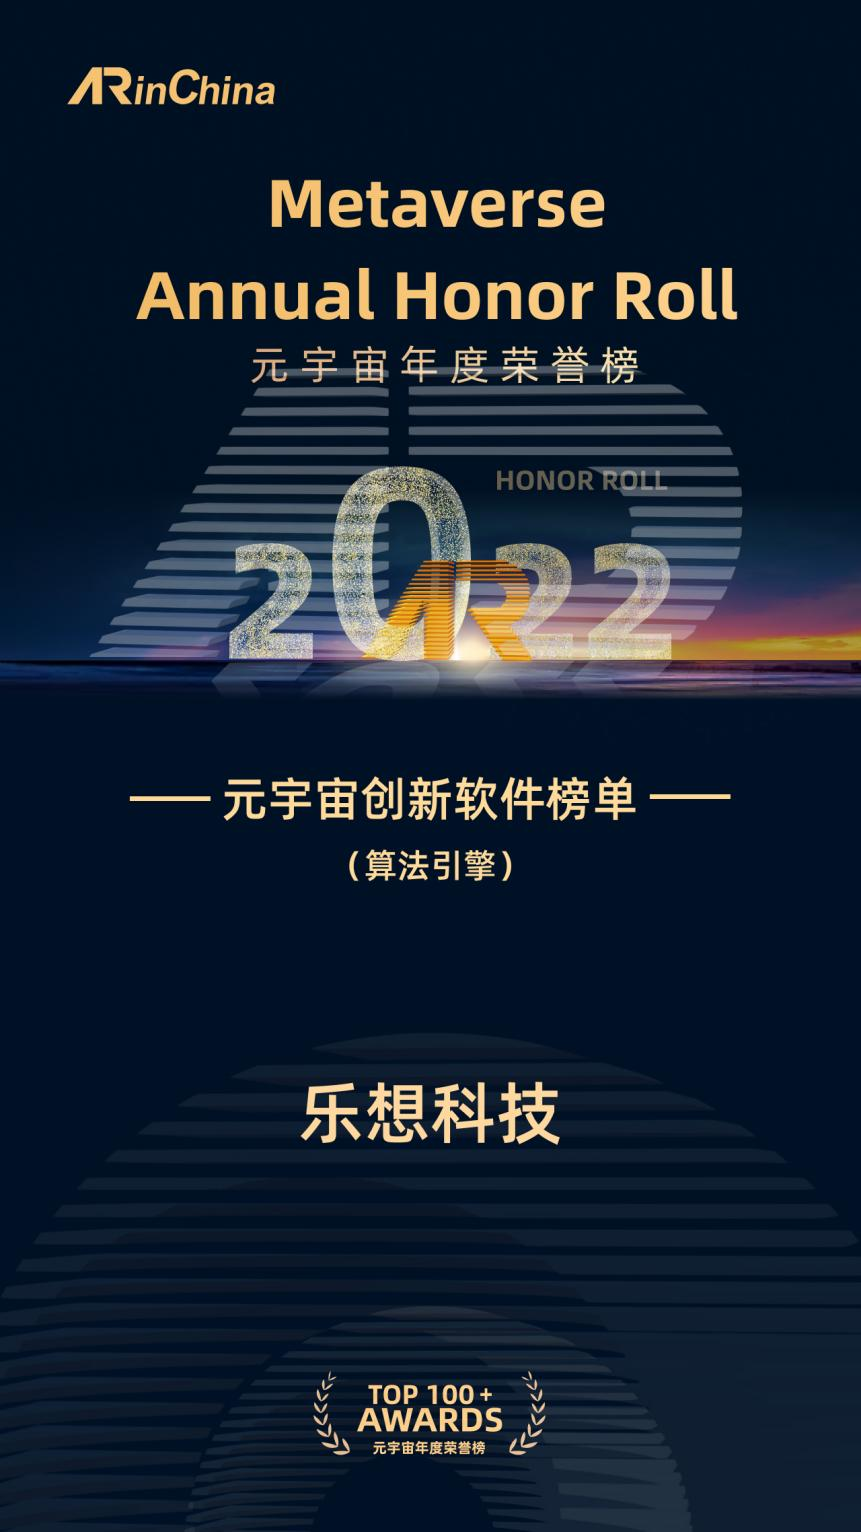 福建乐想天成信息科技有限公司荣登ARinChina 2022元宇宙年度荣誉榜